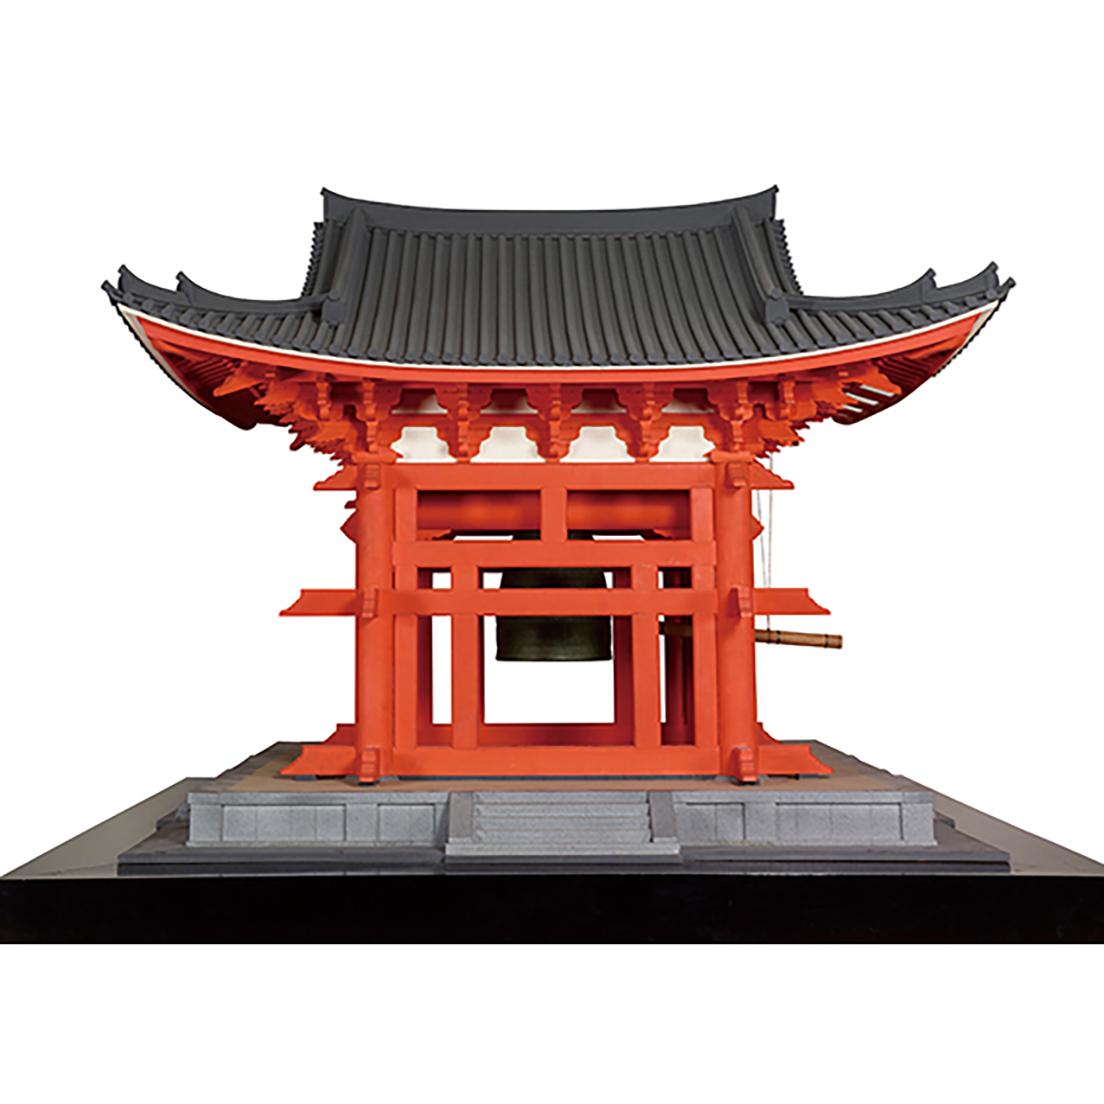 東大寺鐘楼1/10模型 1966年 東京国立博物館蔵 展示会場：東京国立博物館